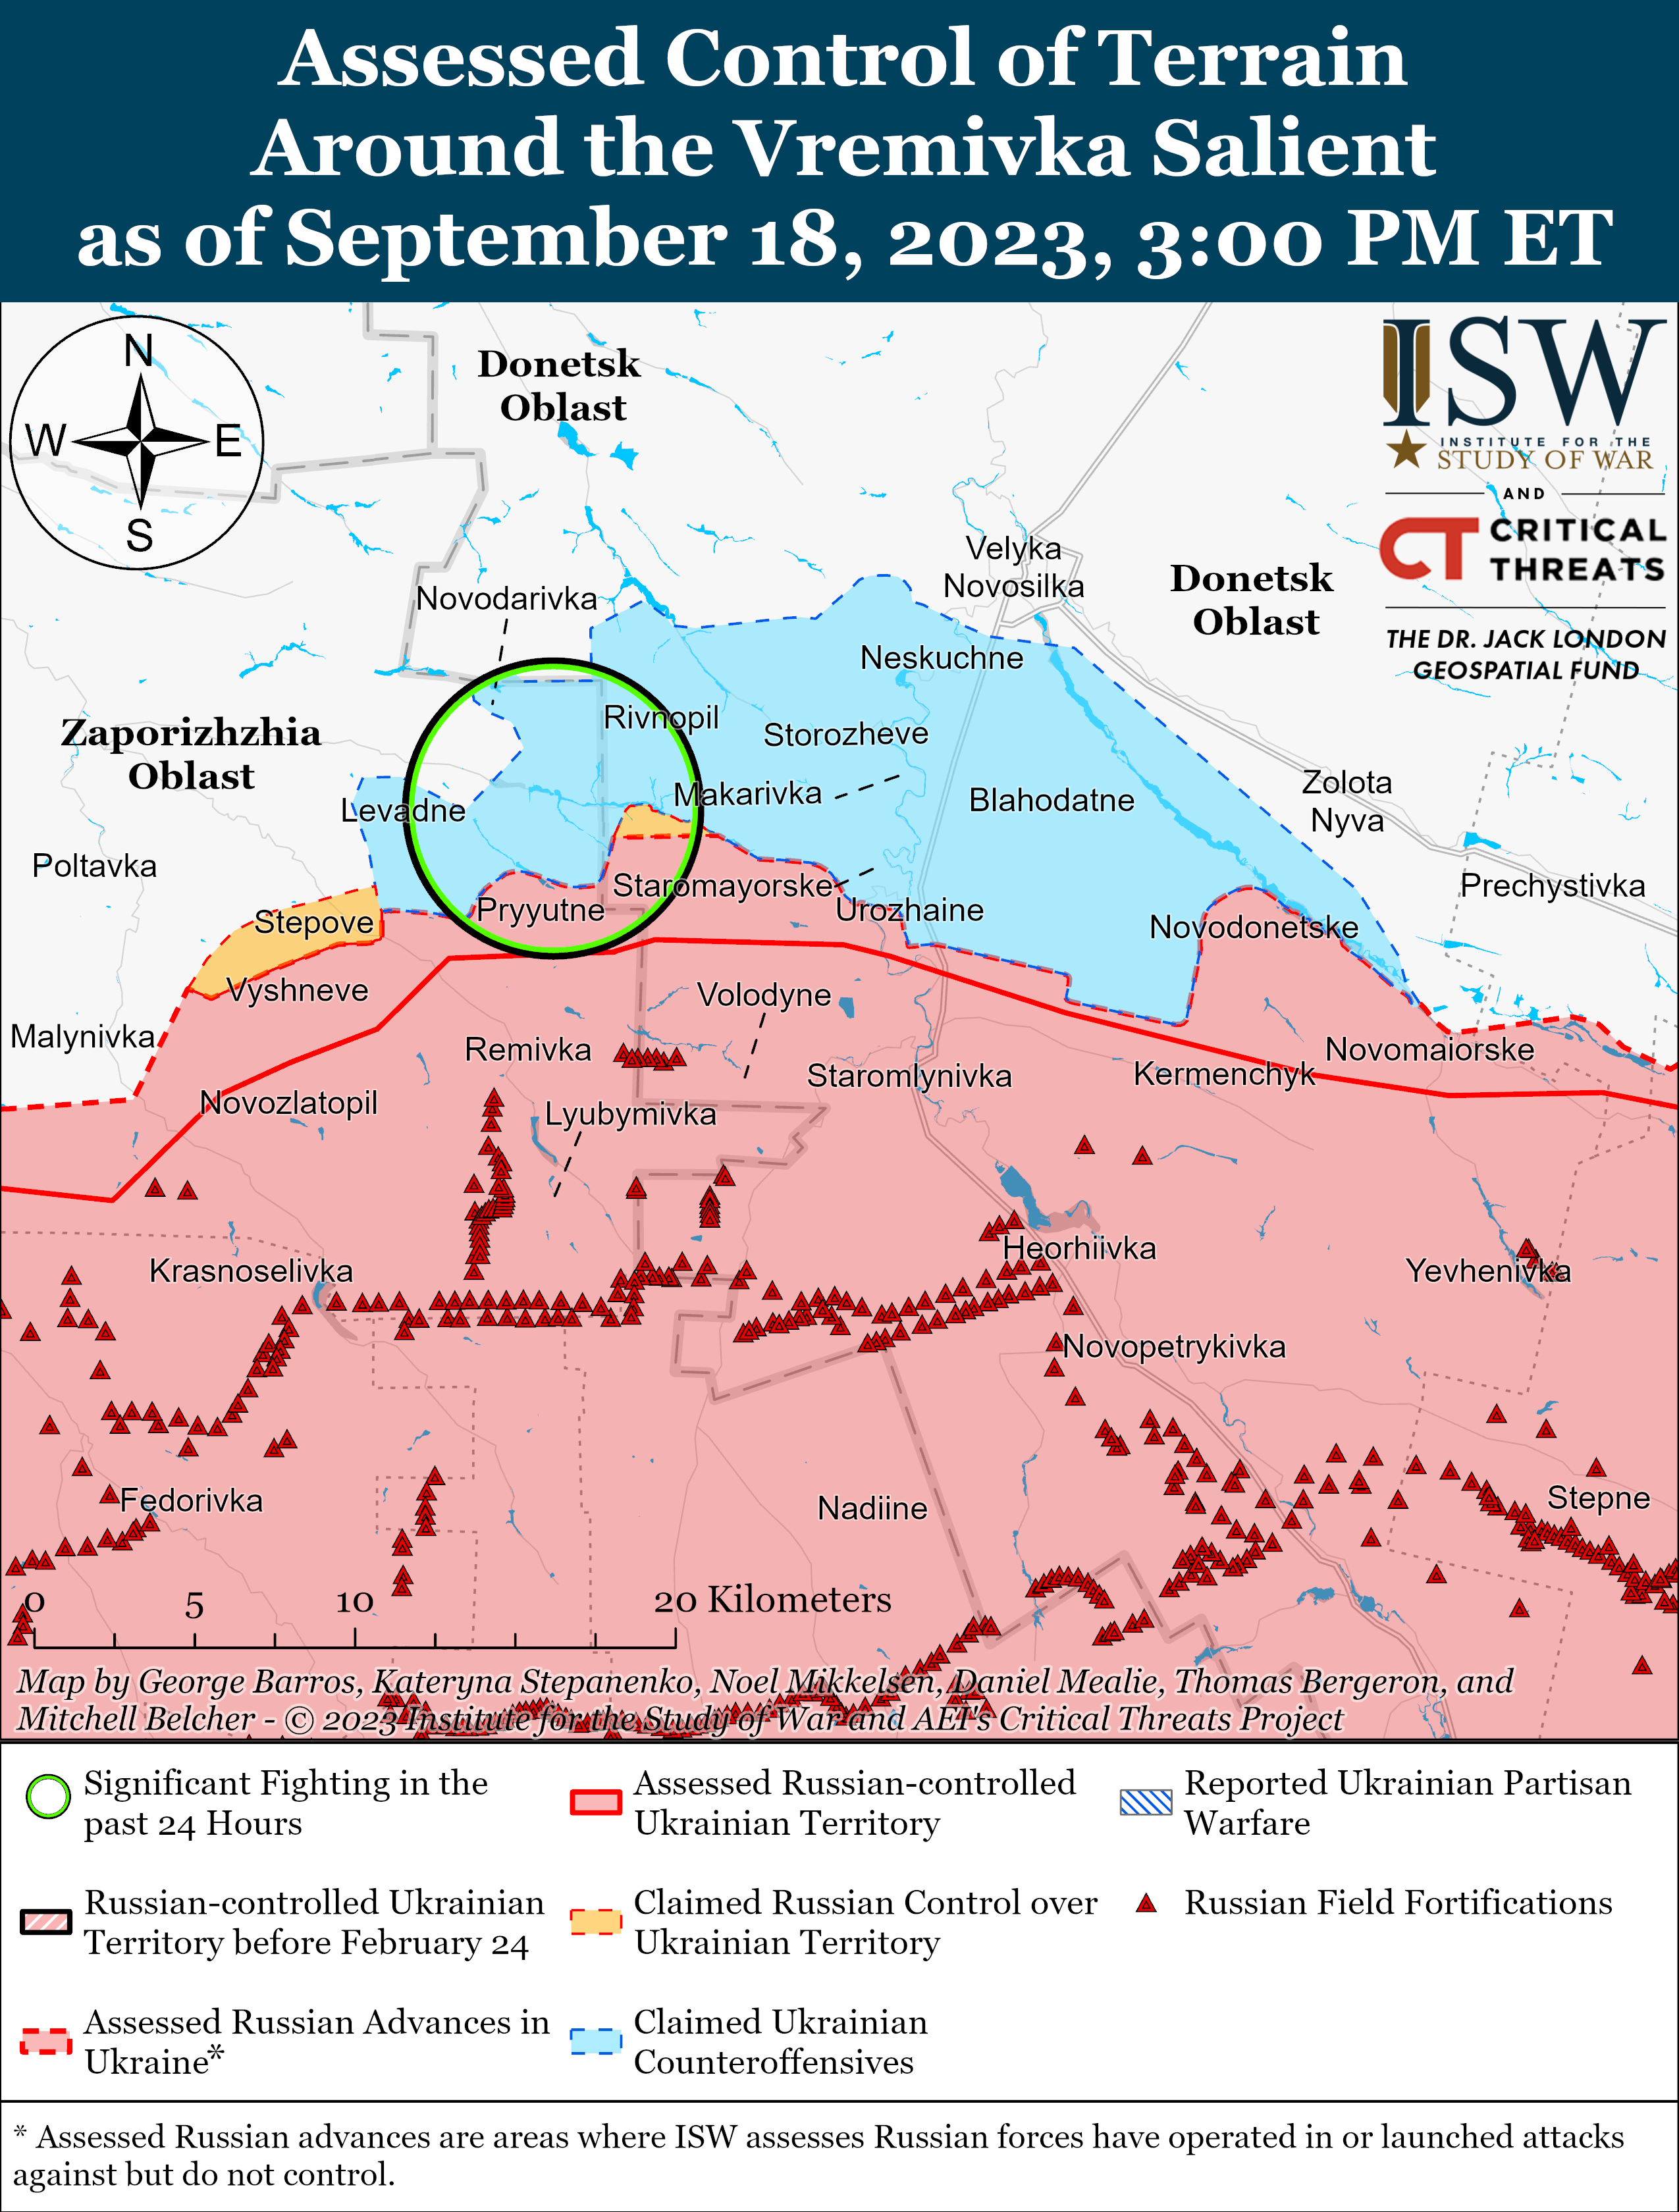 Украинские войска продвинулись на западе Запорожской области: карты боев ISW